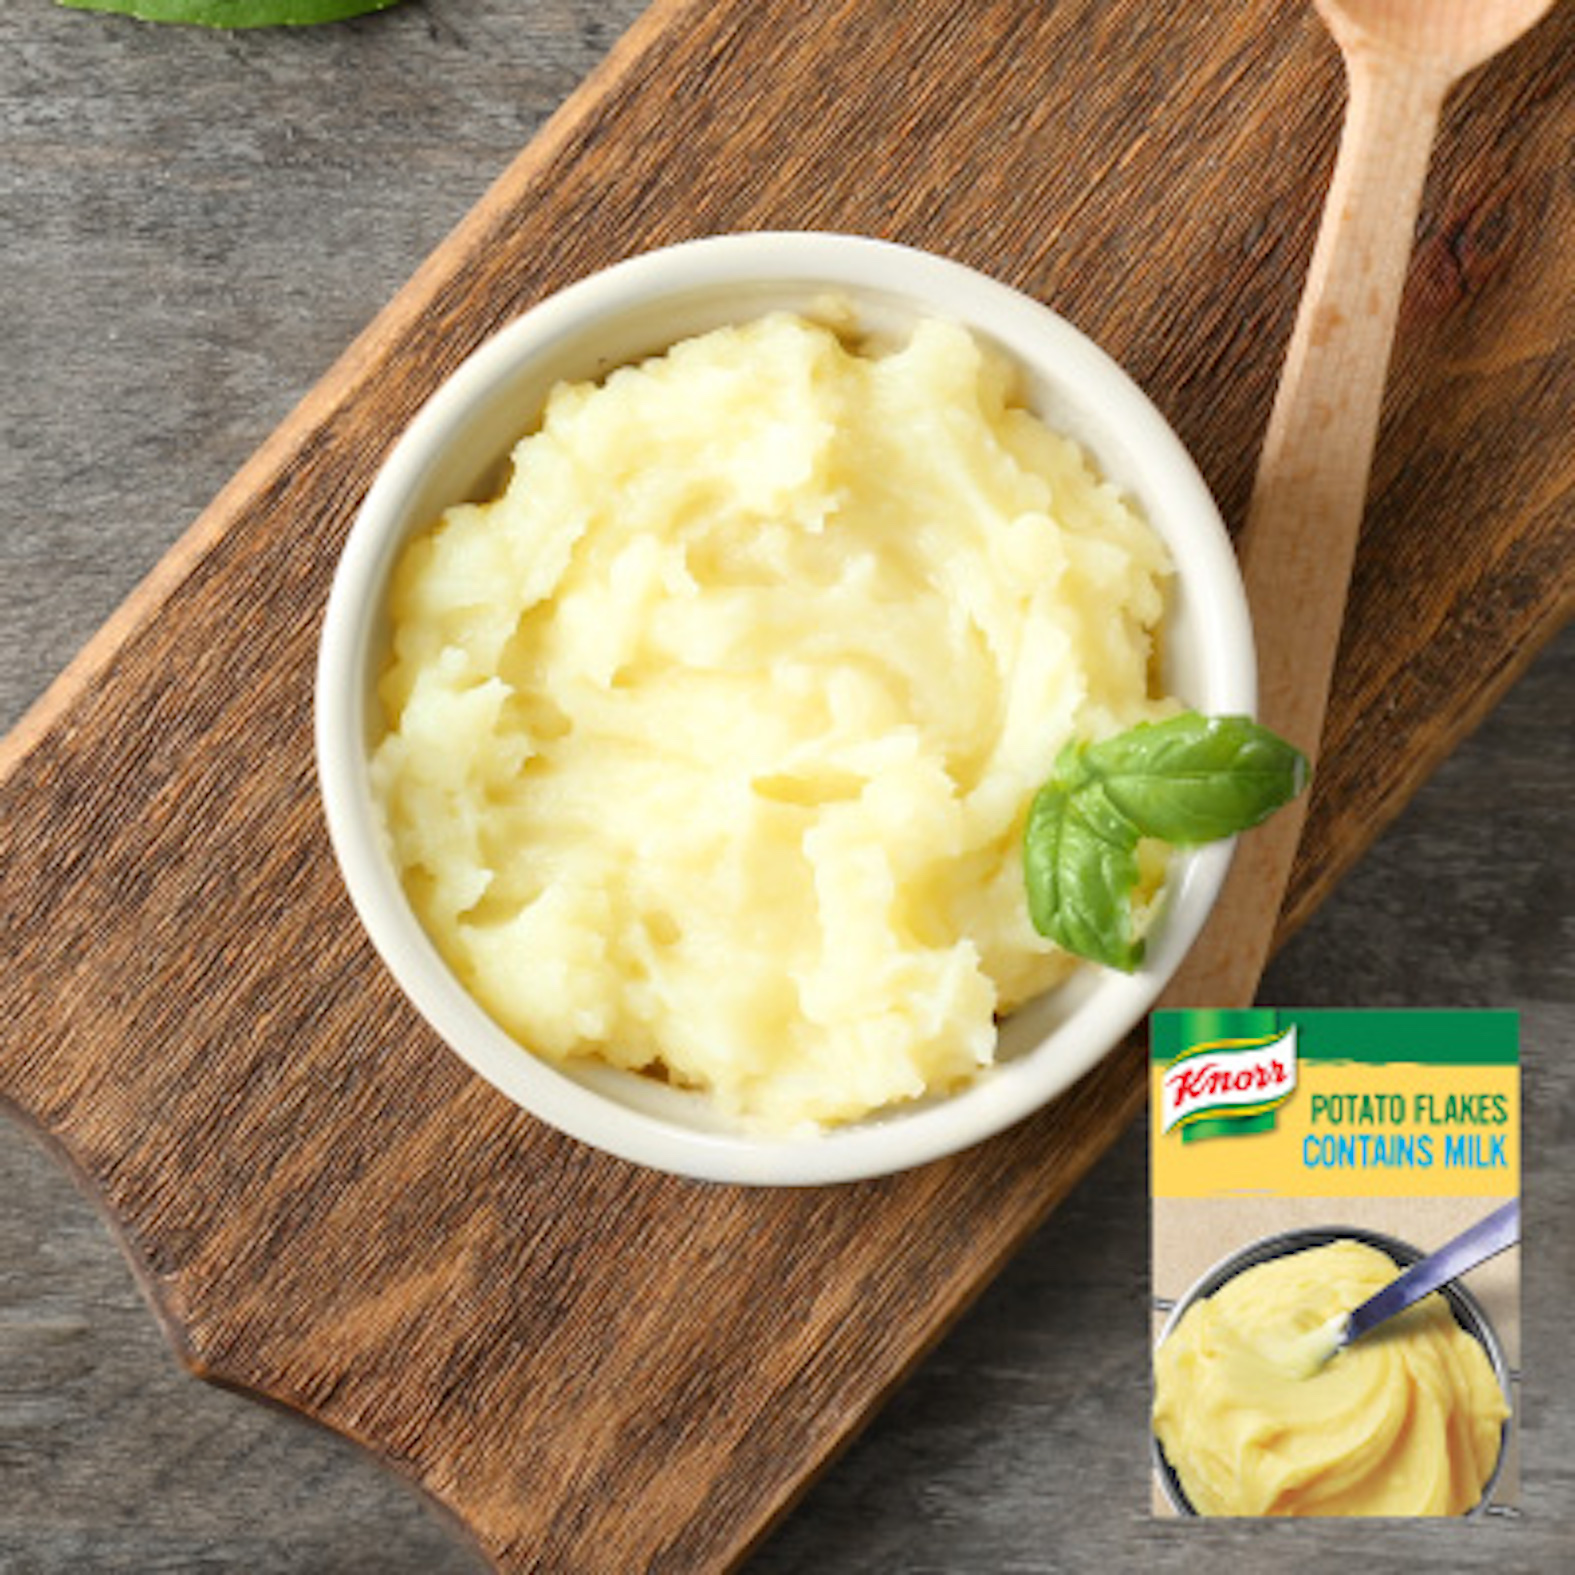 Buy Knorr Mashed Potato Flake (2KG)